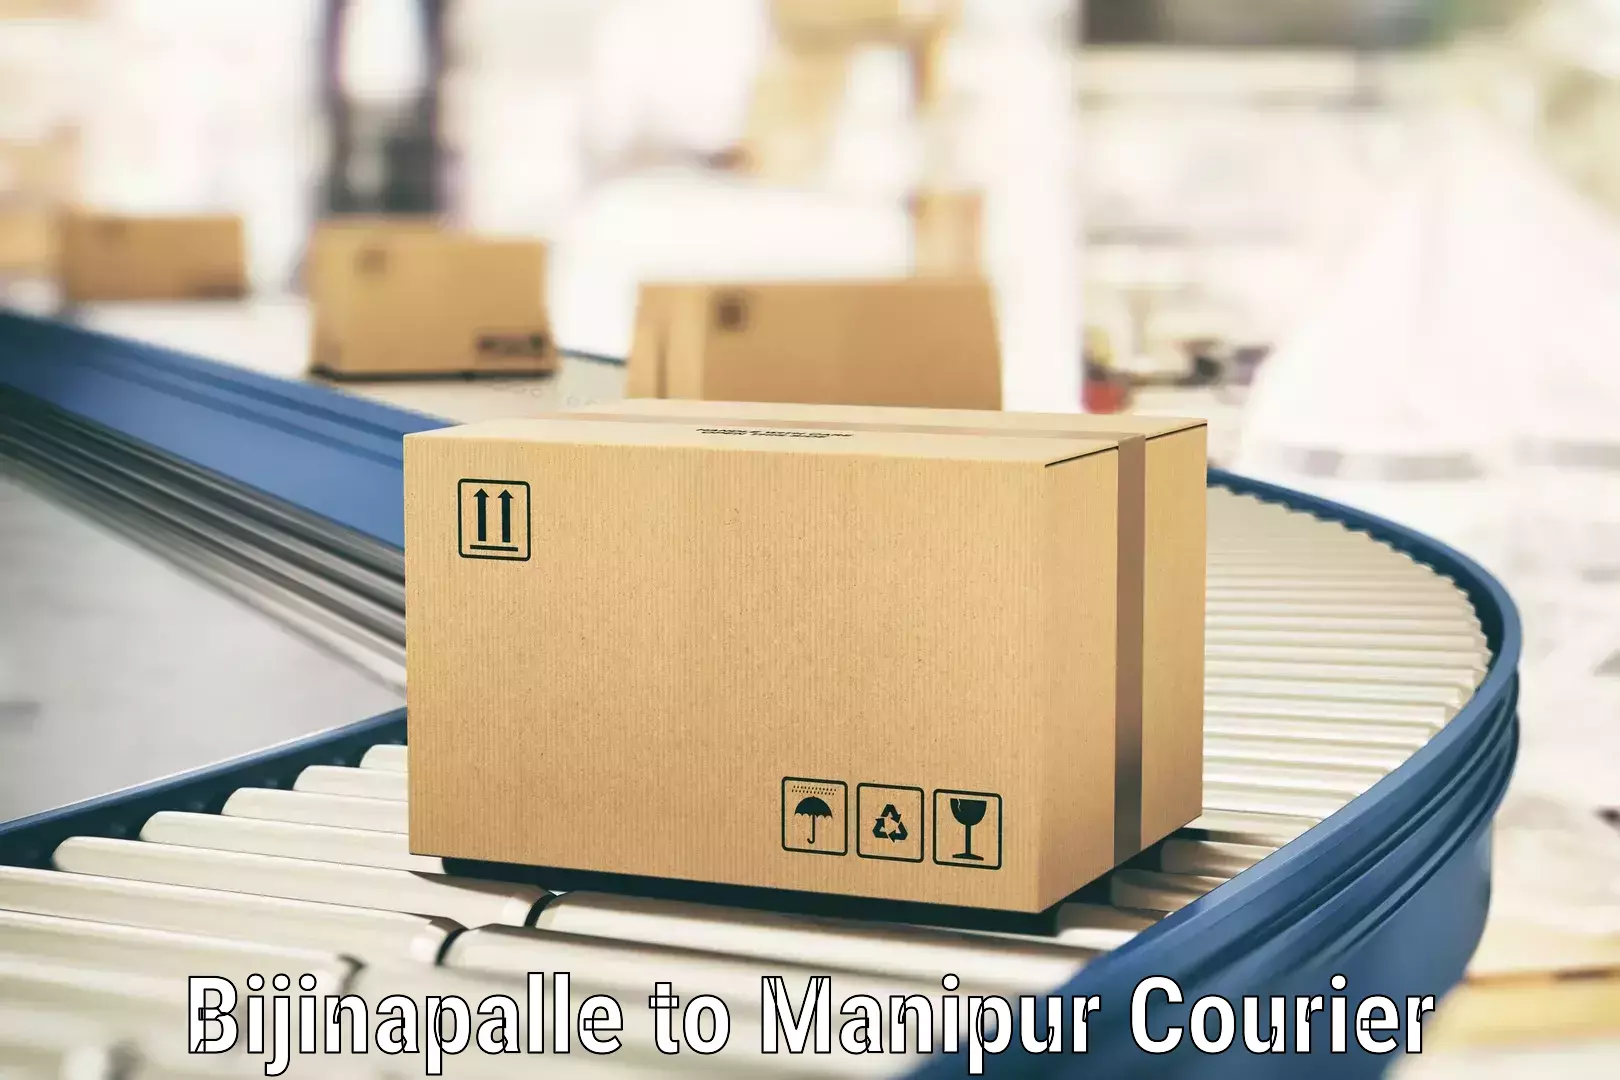 Modern parcel services Bijinapalle to Manipur